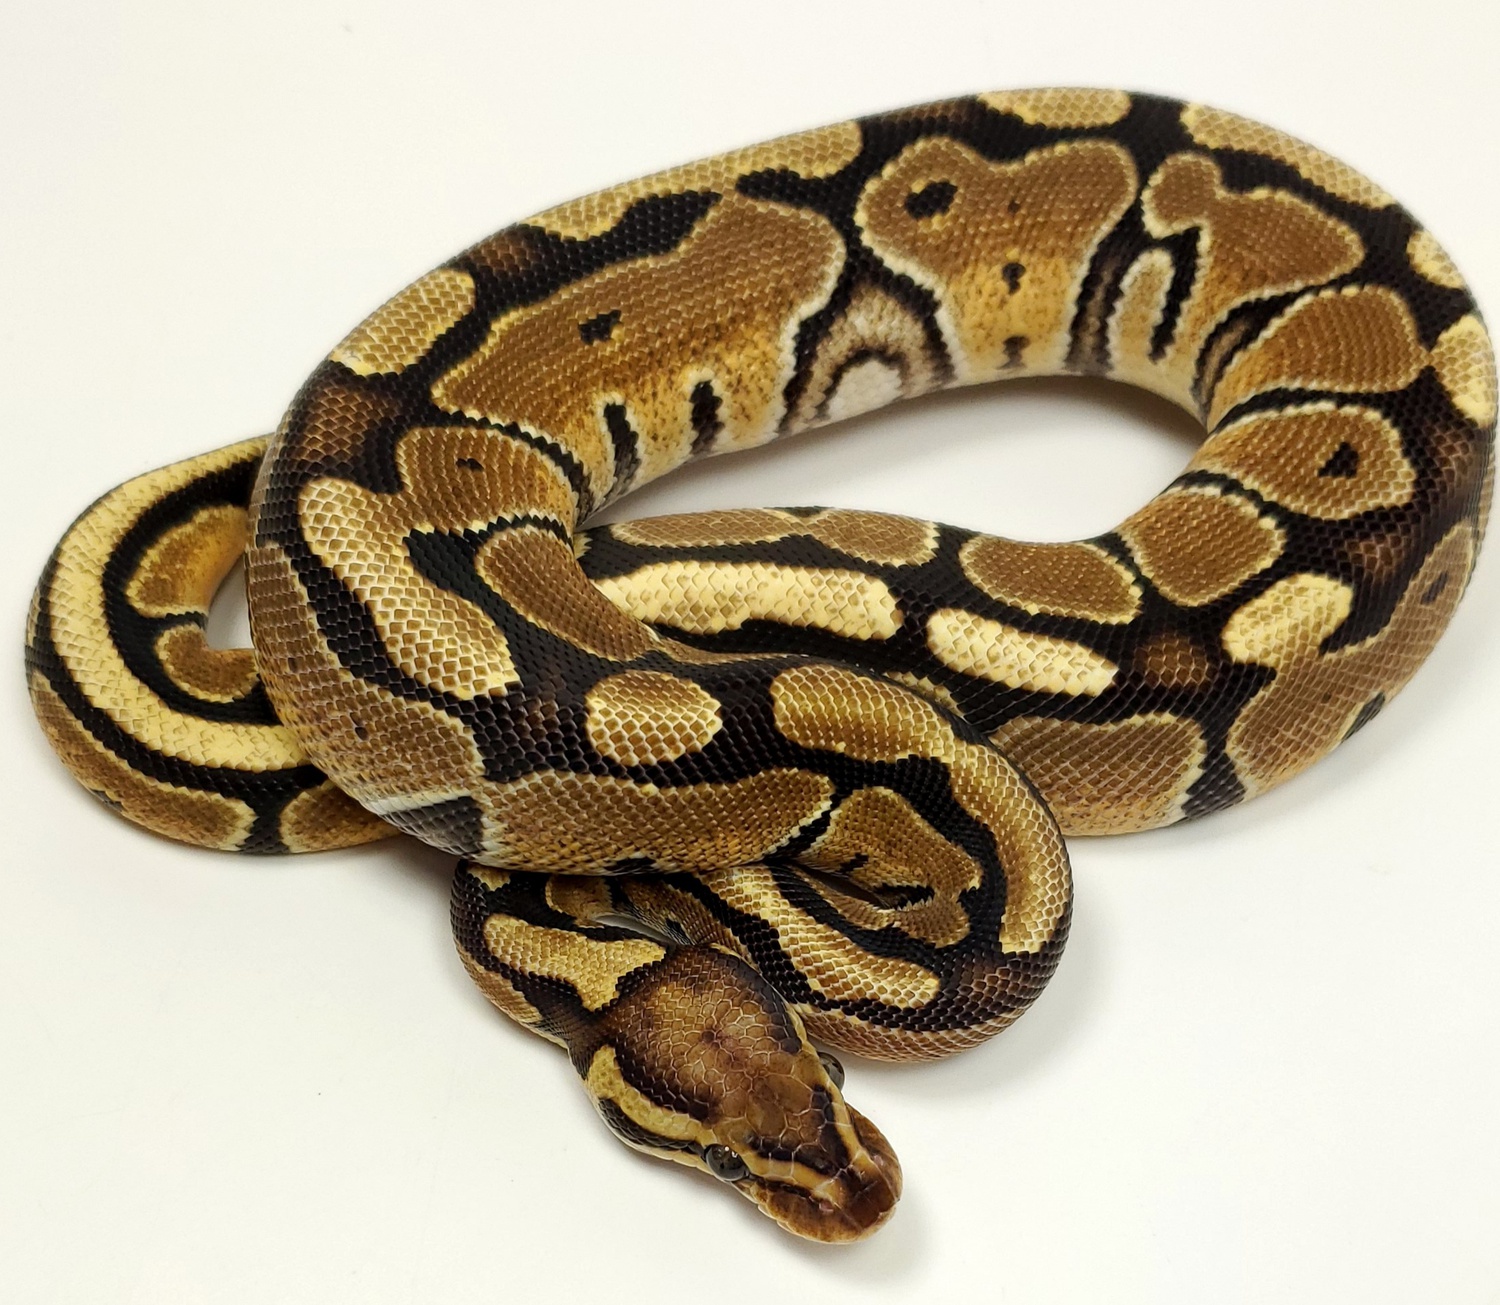 Vanilla Ball Python by Loxahatchee Herp Hatchery